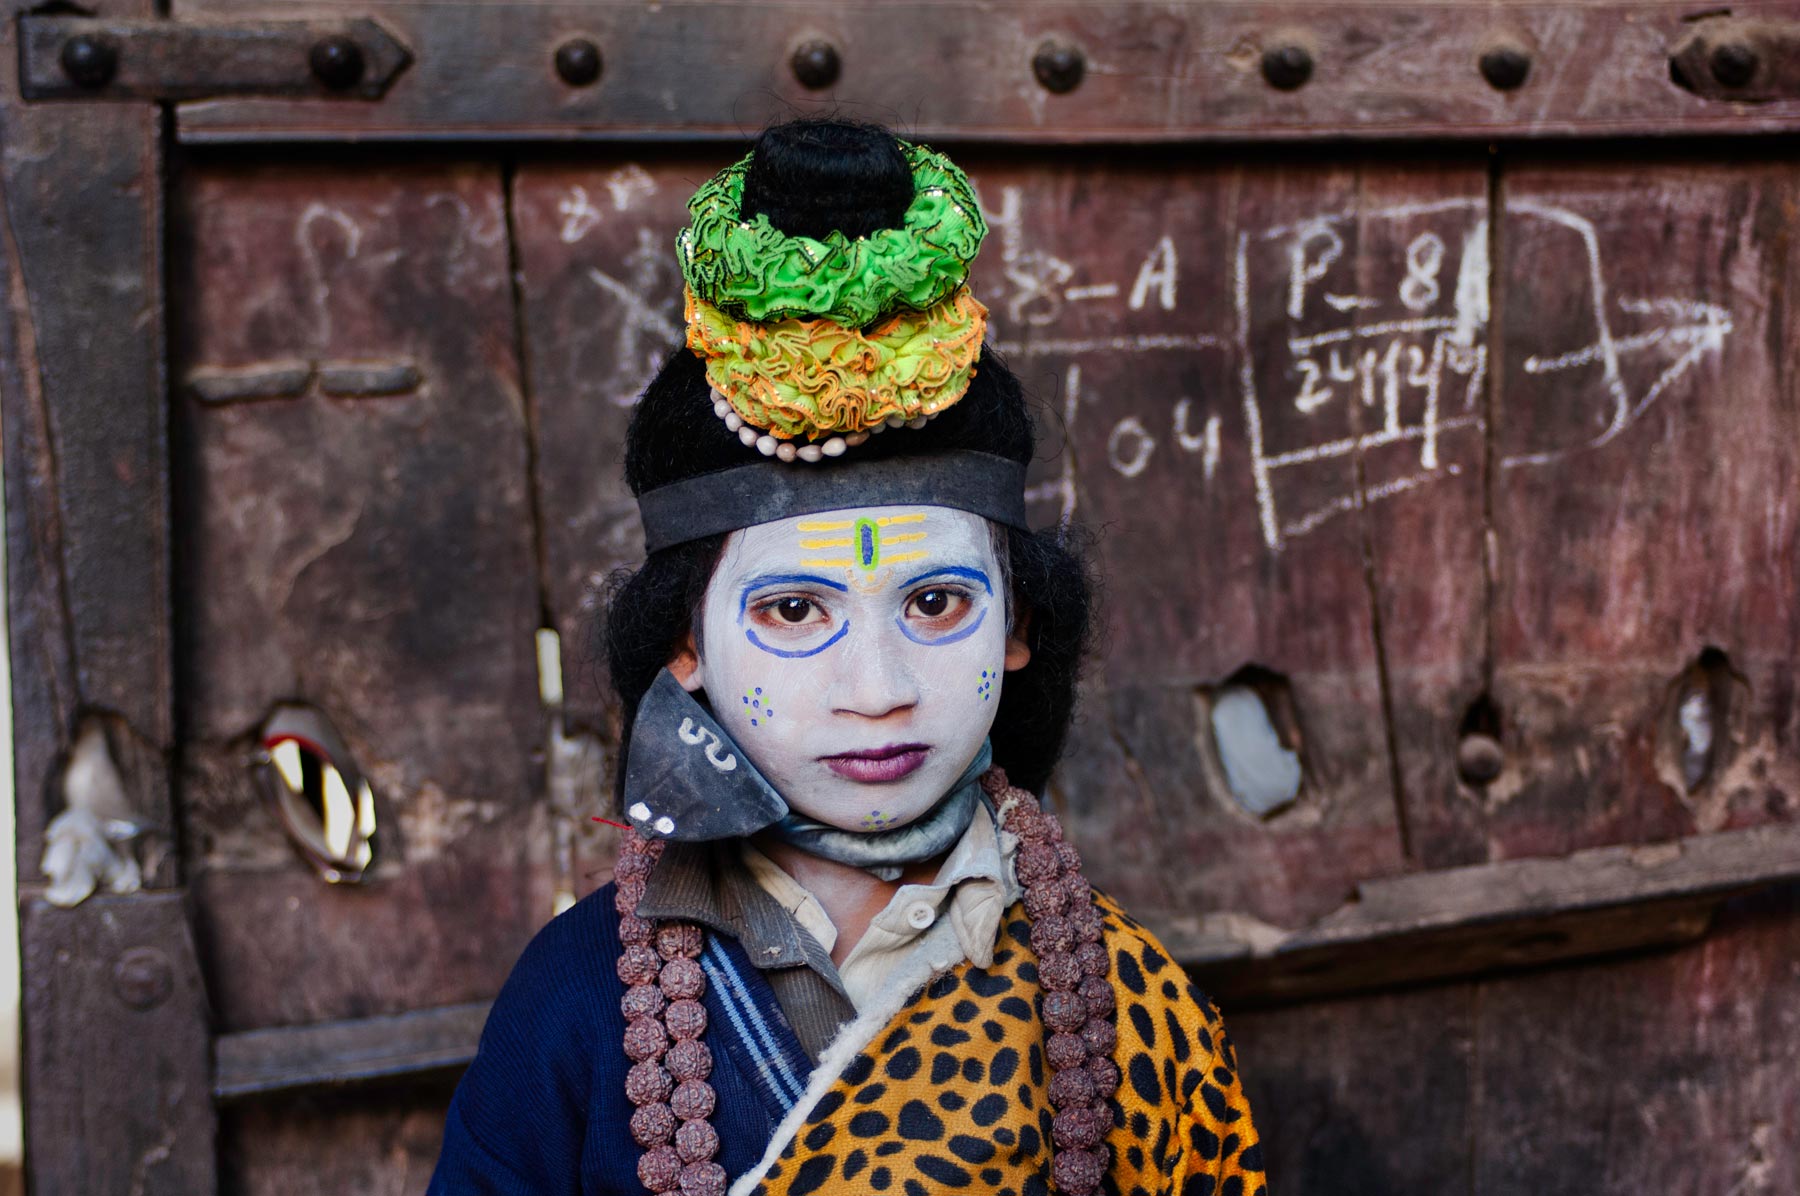  印度儿童，来自摄影师Steve McCurry。 